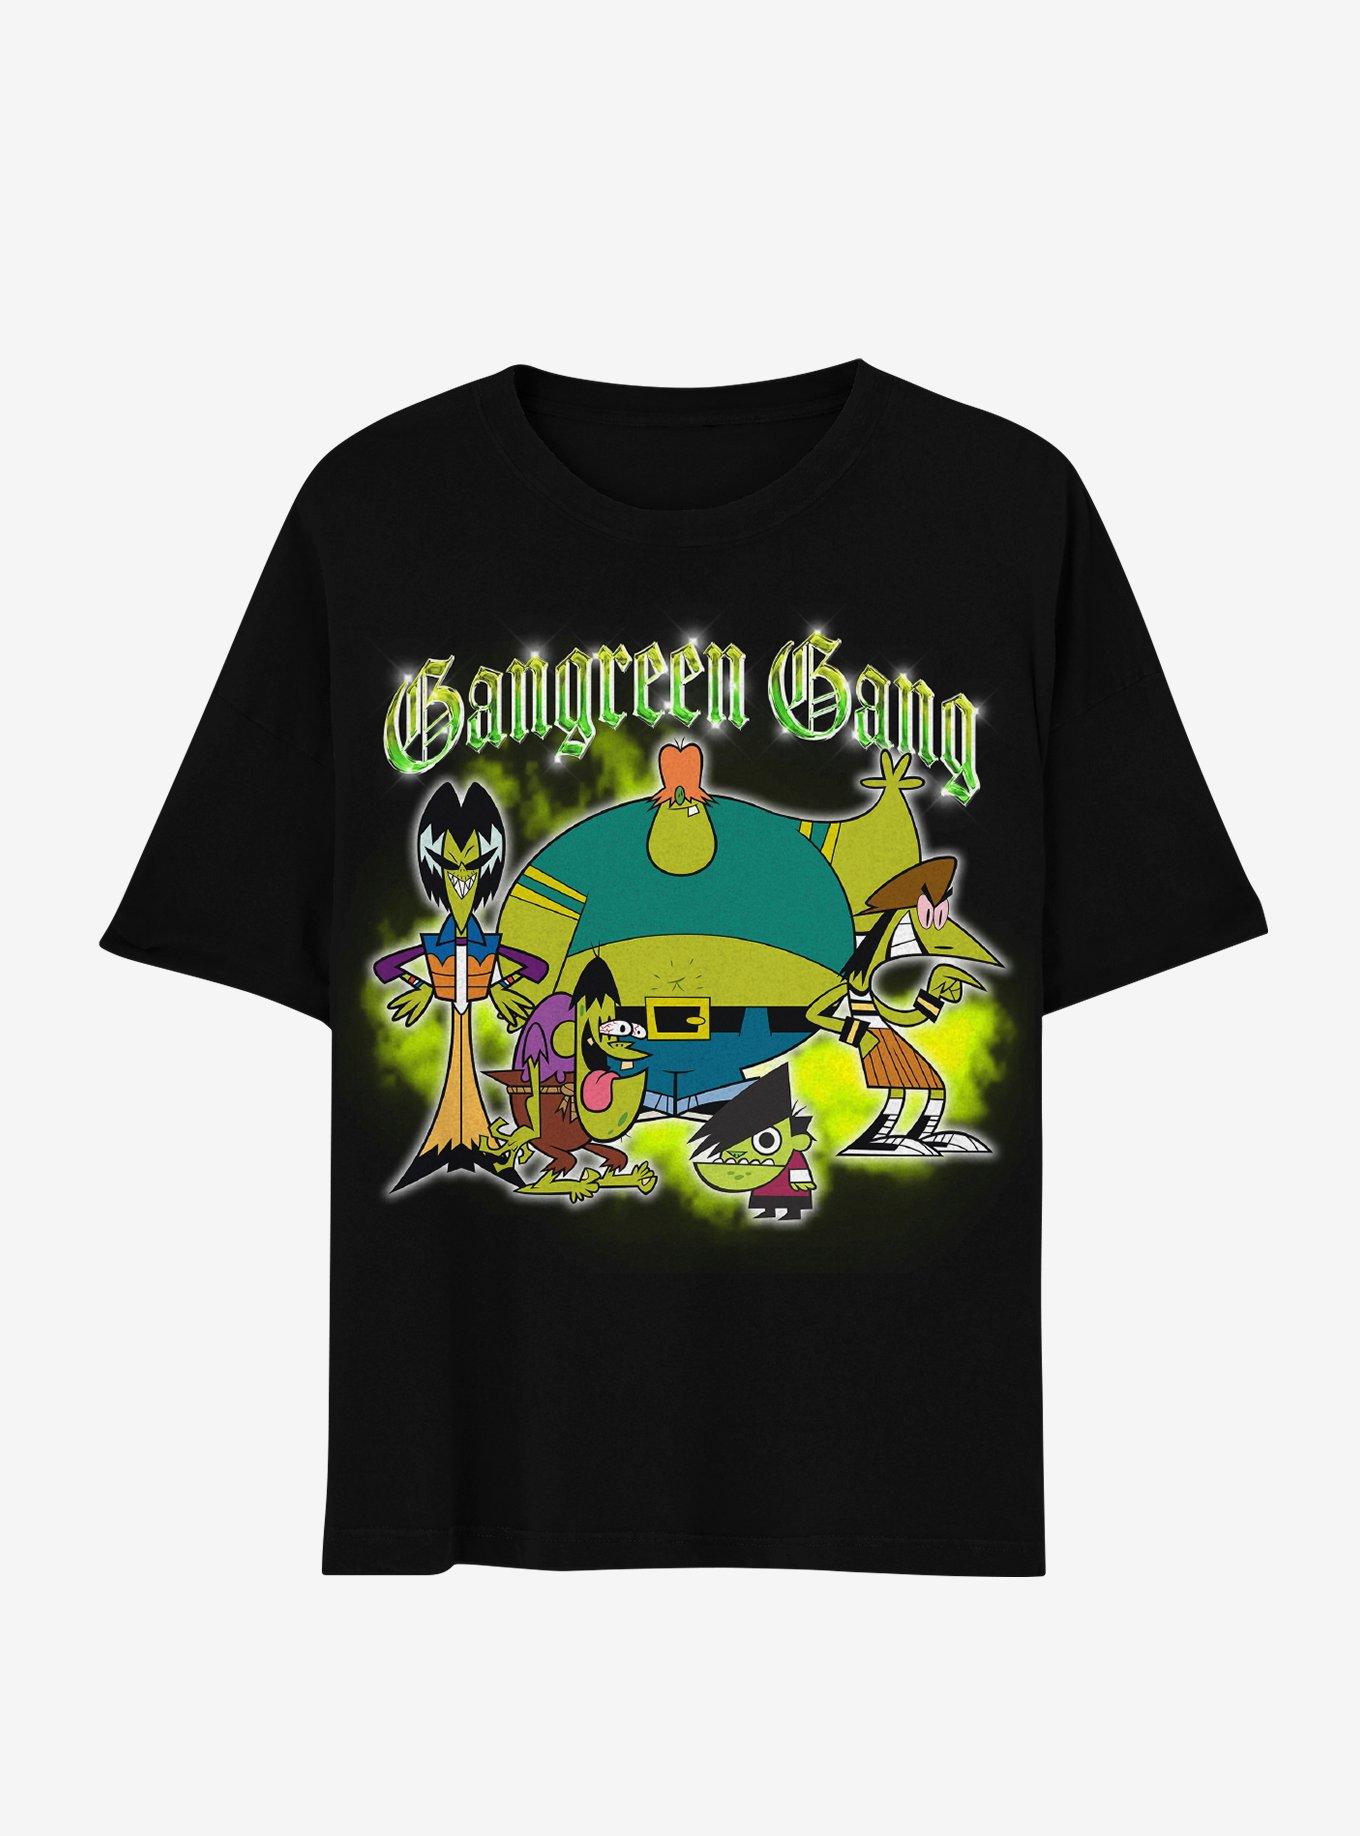 The Powerpuff Girls Gangreen Gang T-Shirt